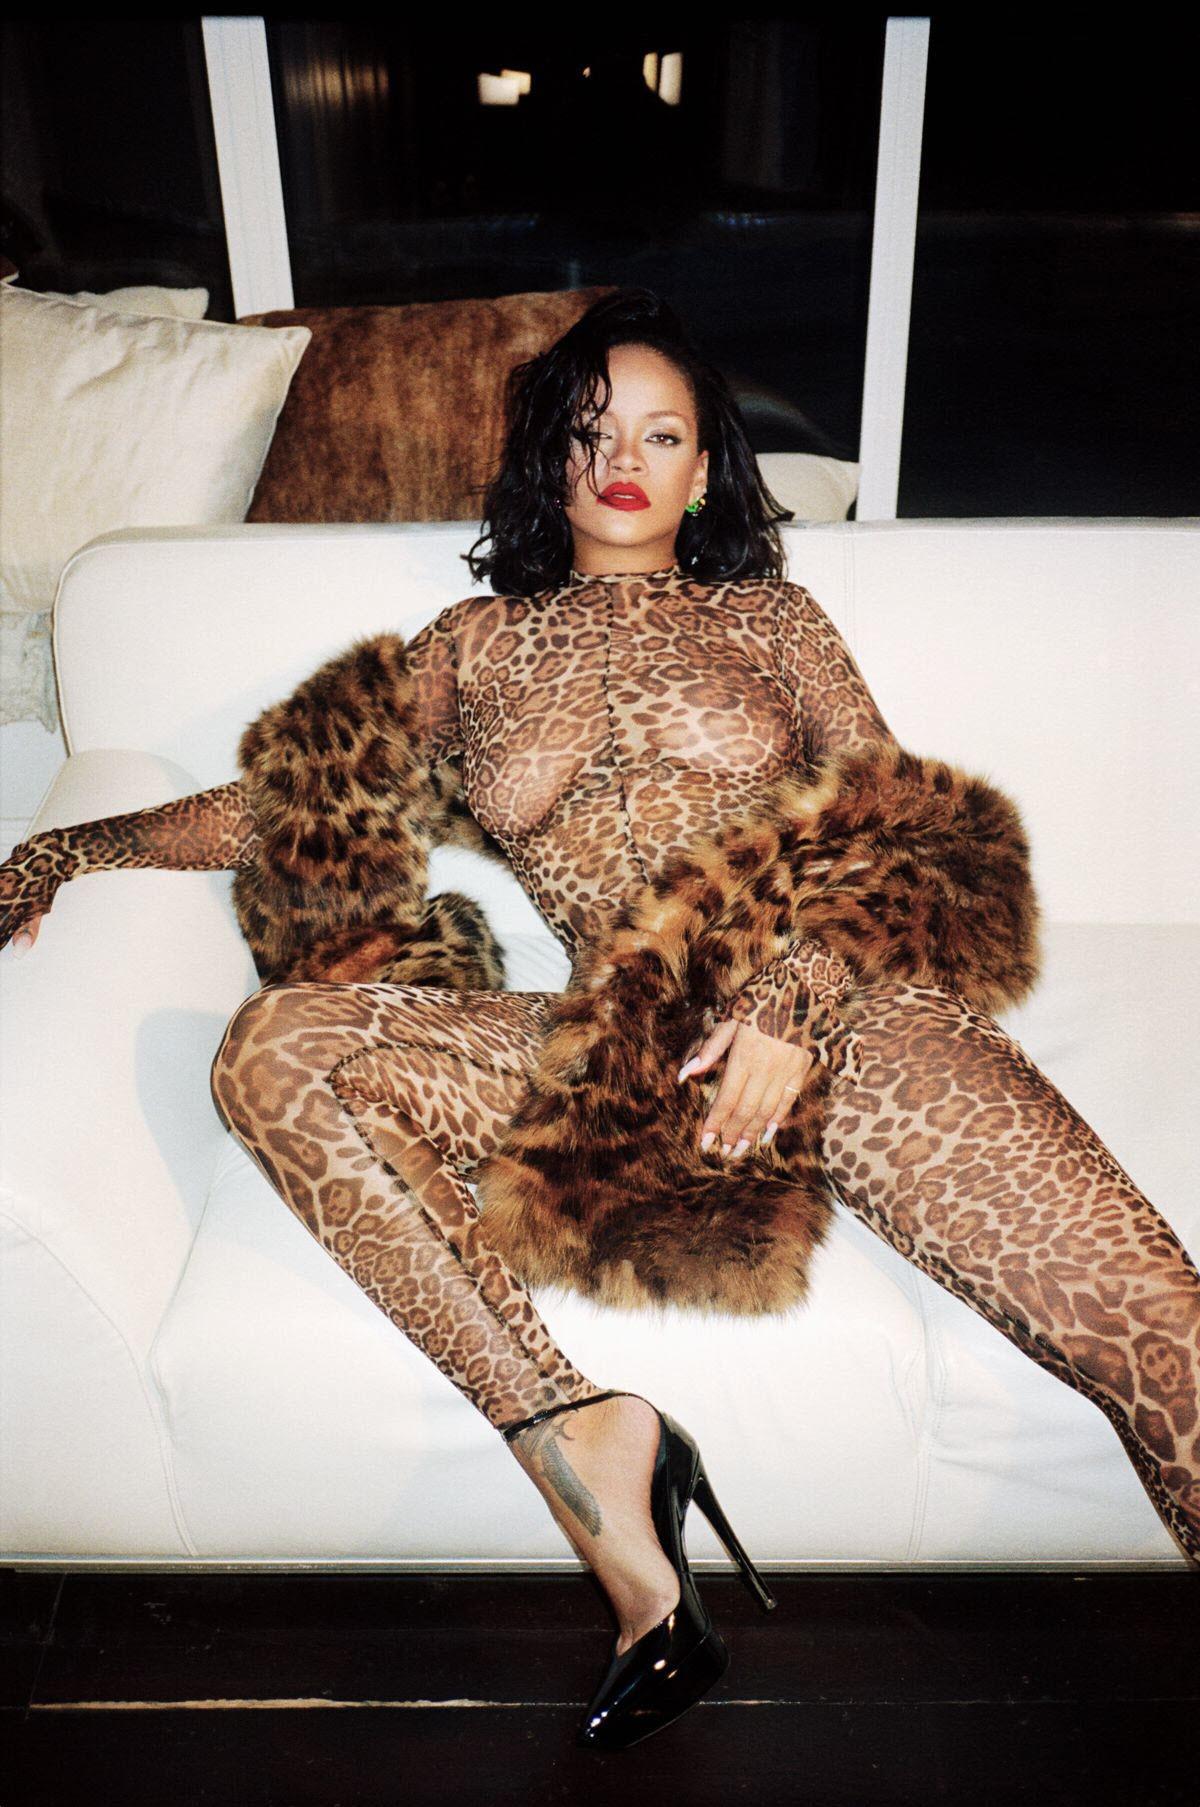 Rihanna Modeling Photoshoot Nudes Leaked